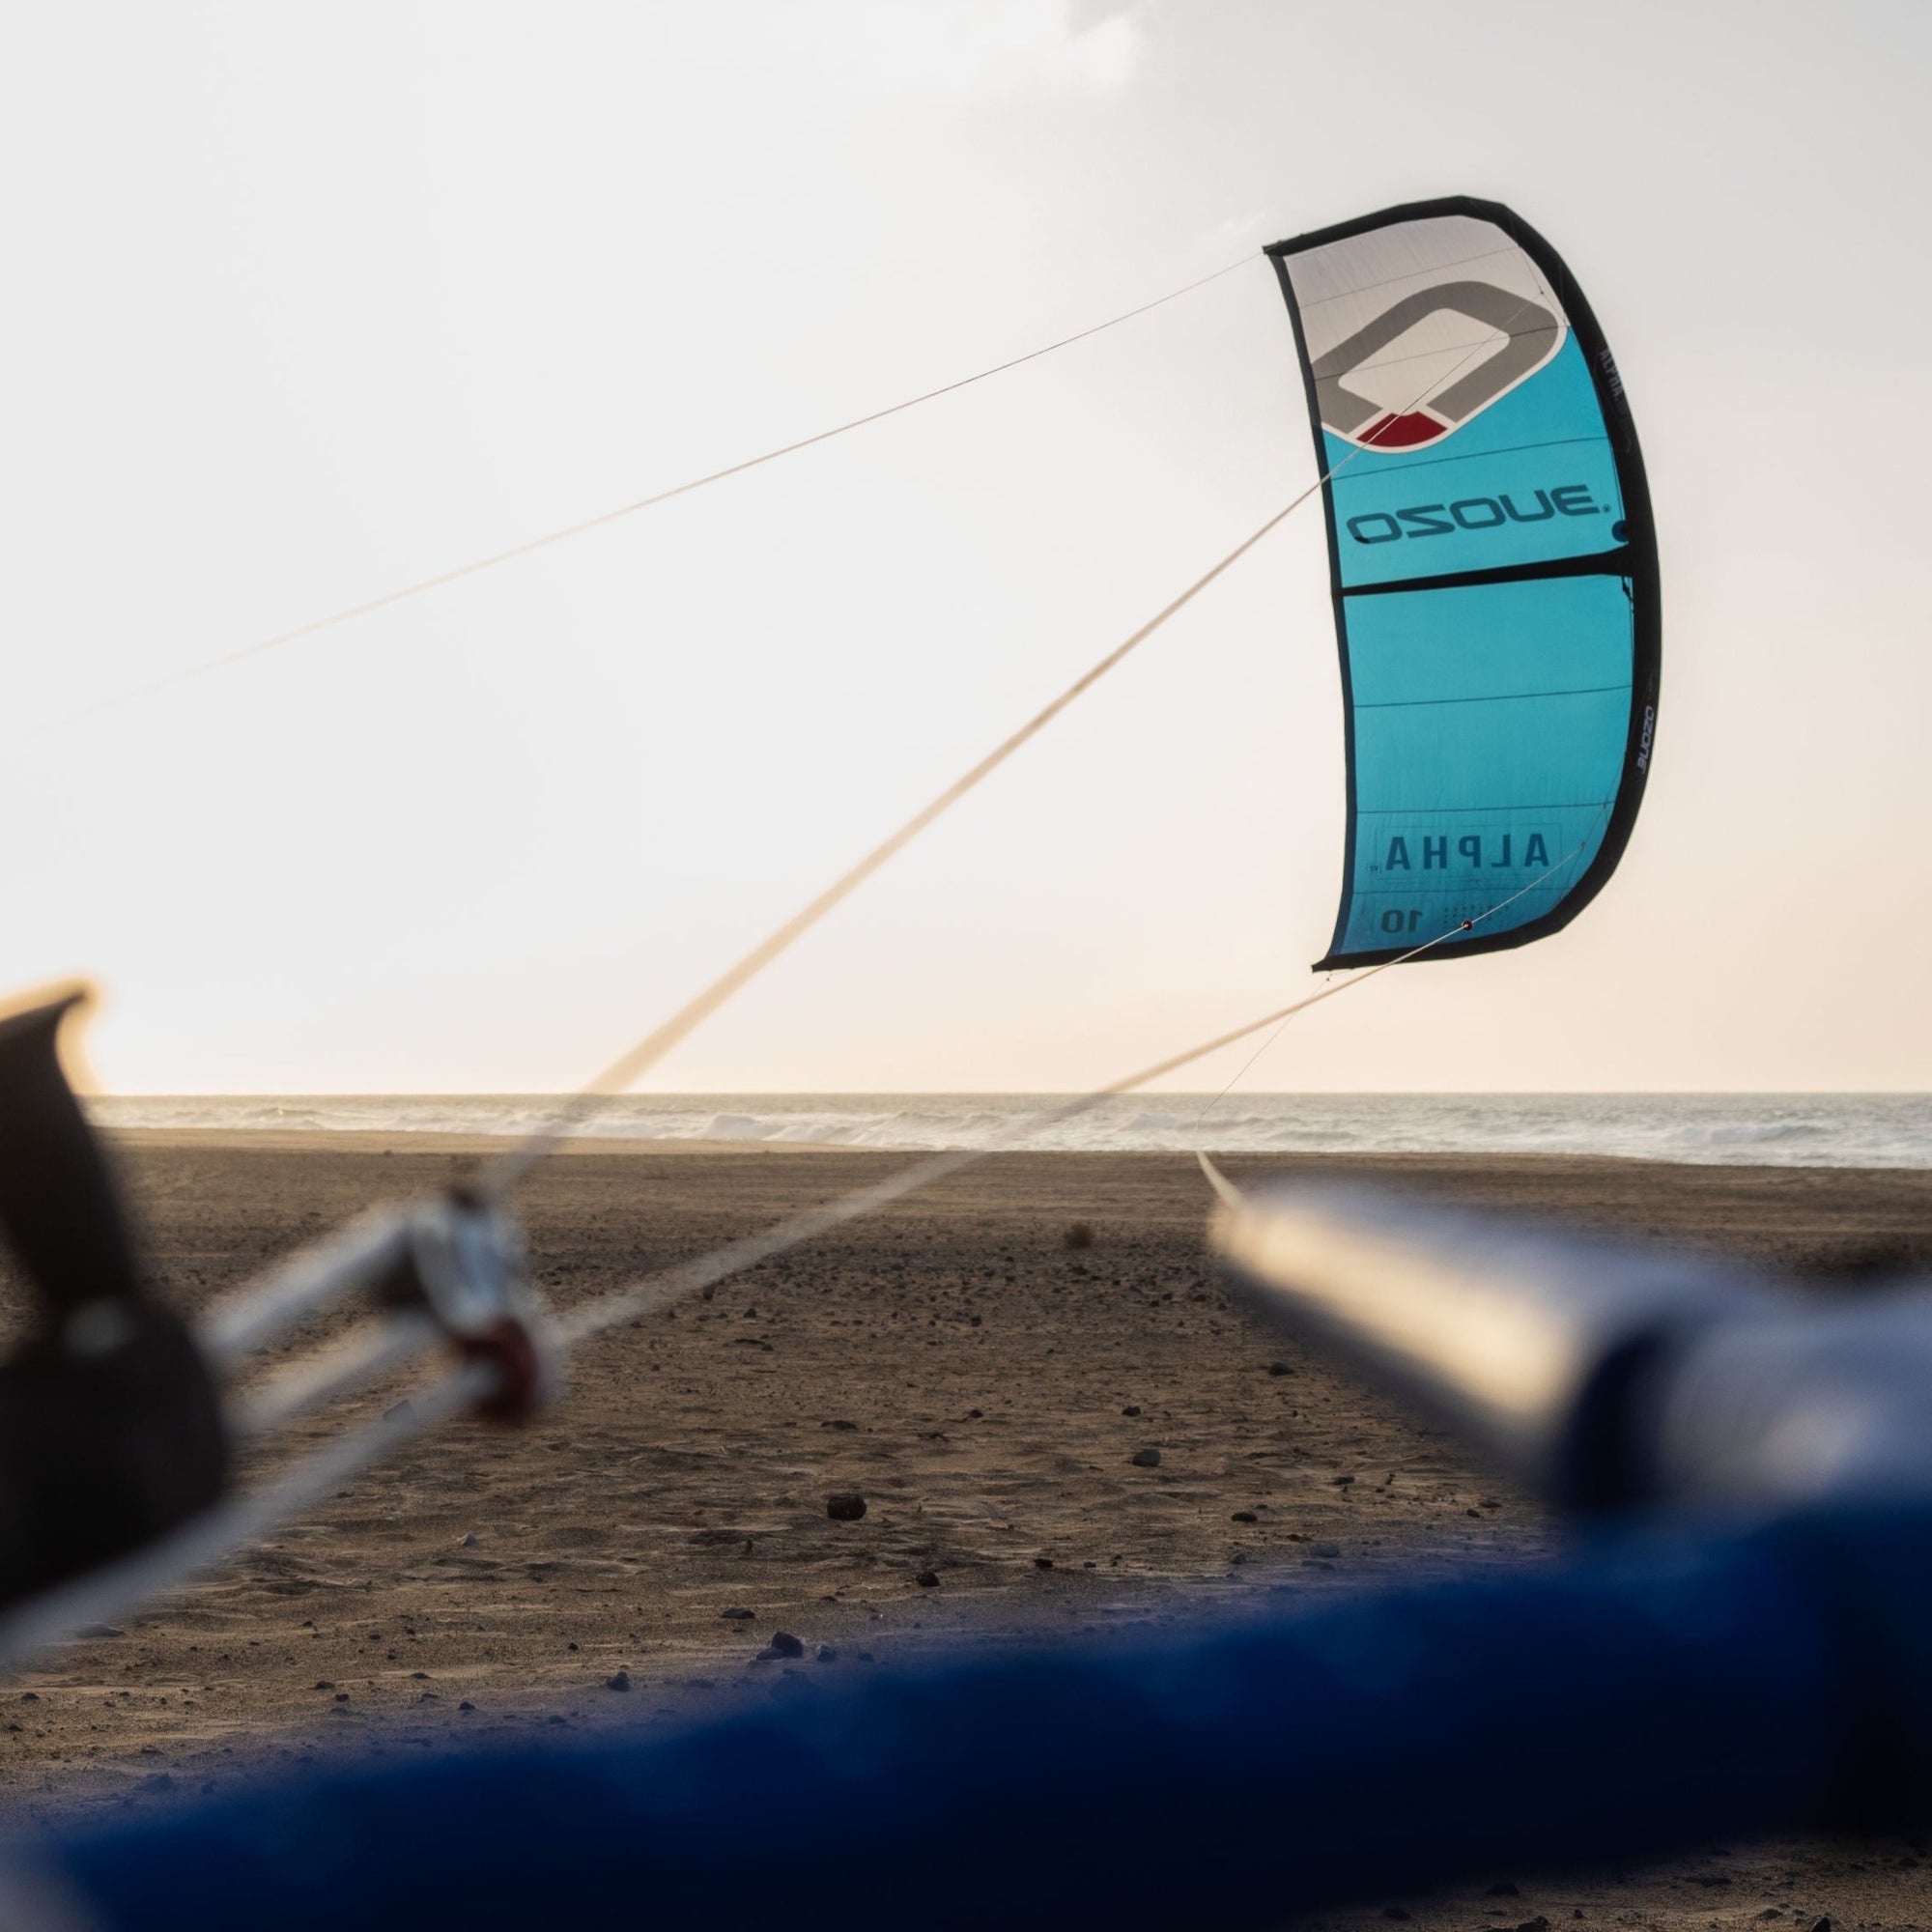 Blue Ozone Aplha V2 kitesurfing single strut kite flying